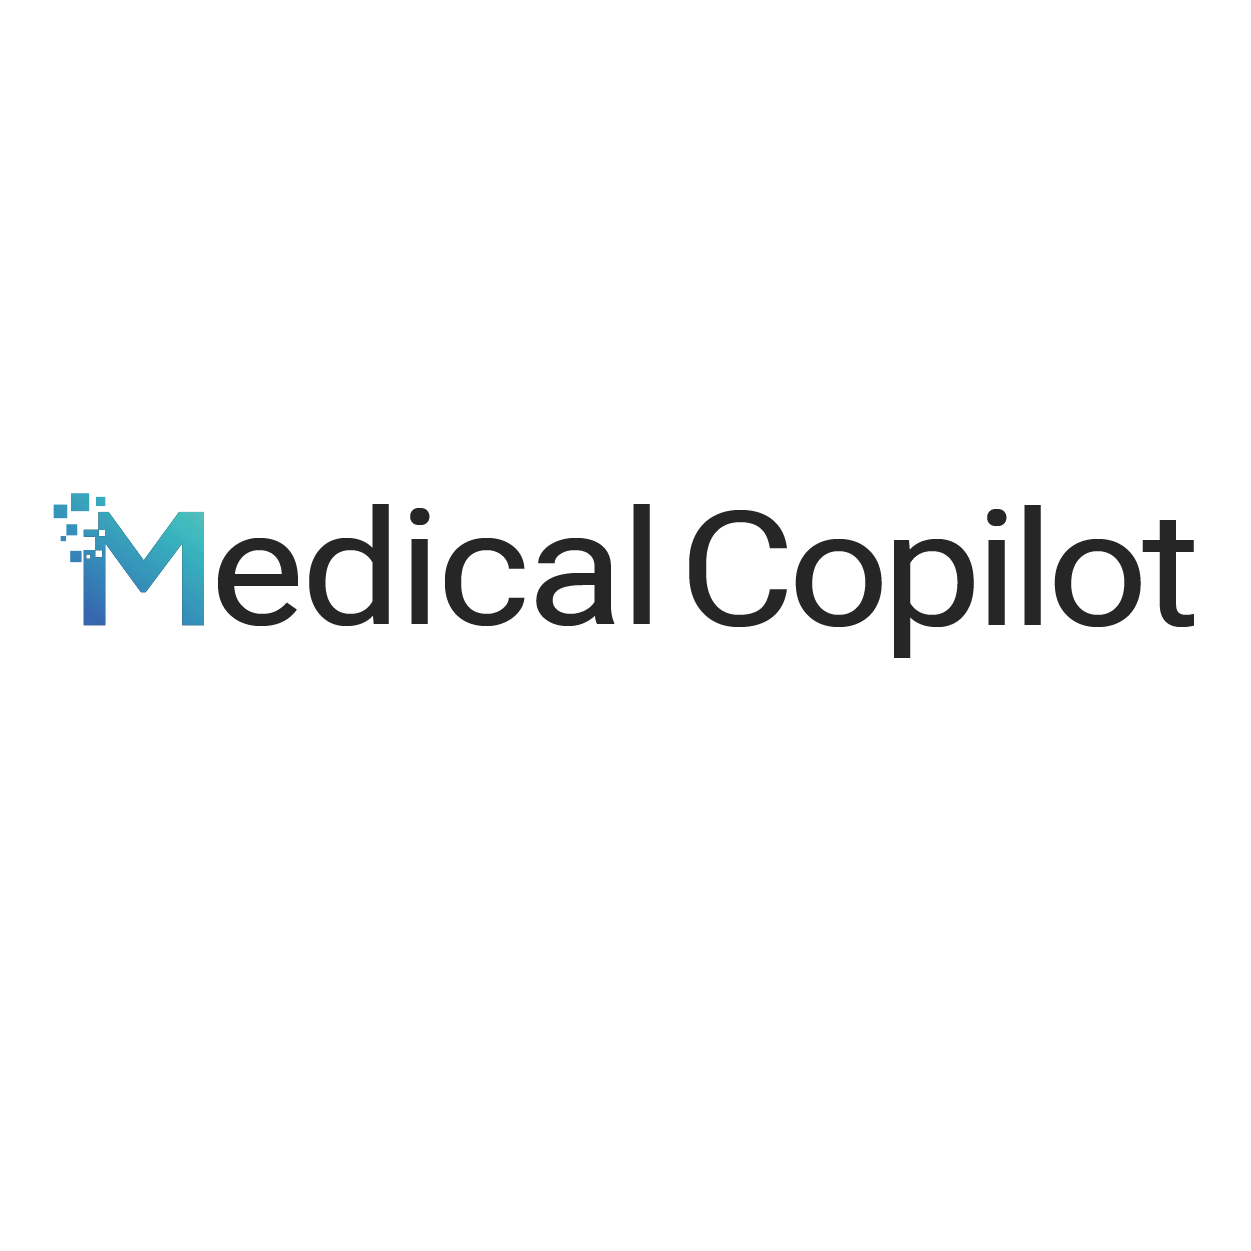 Medical Copilot